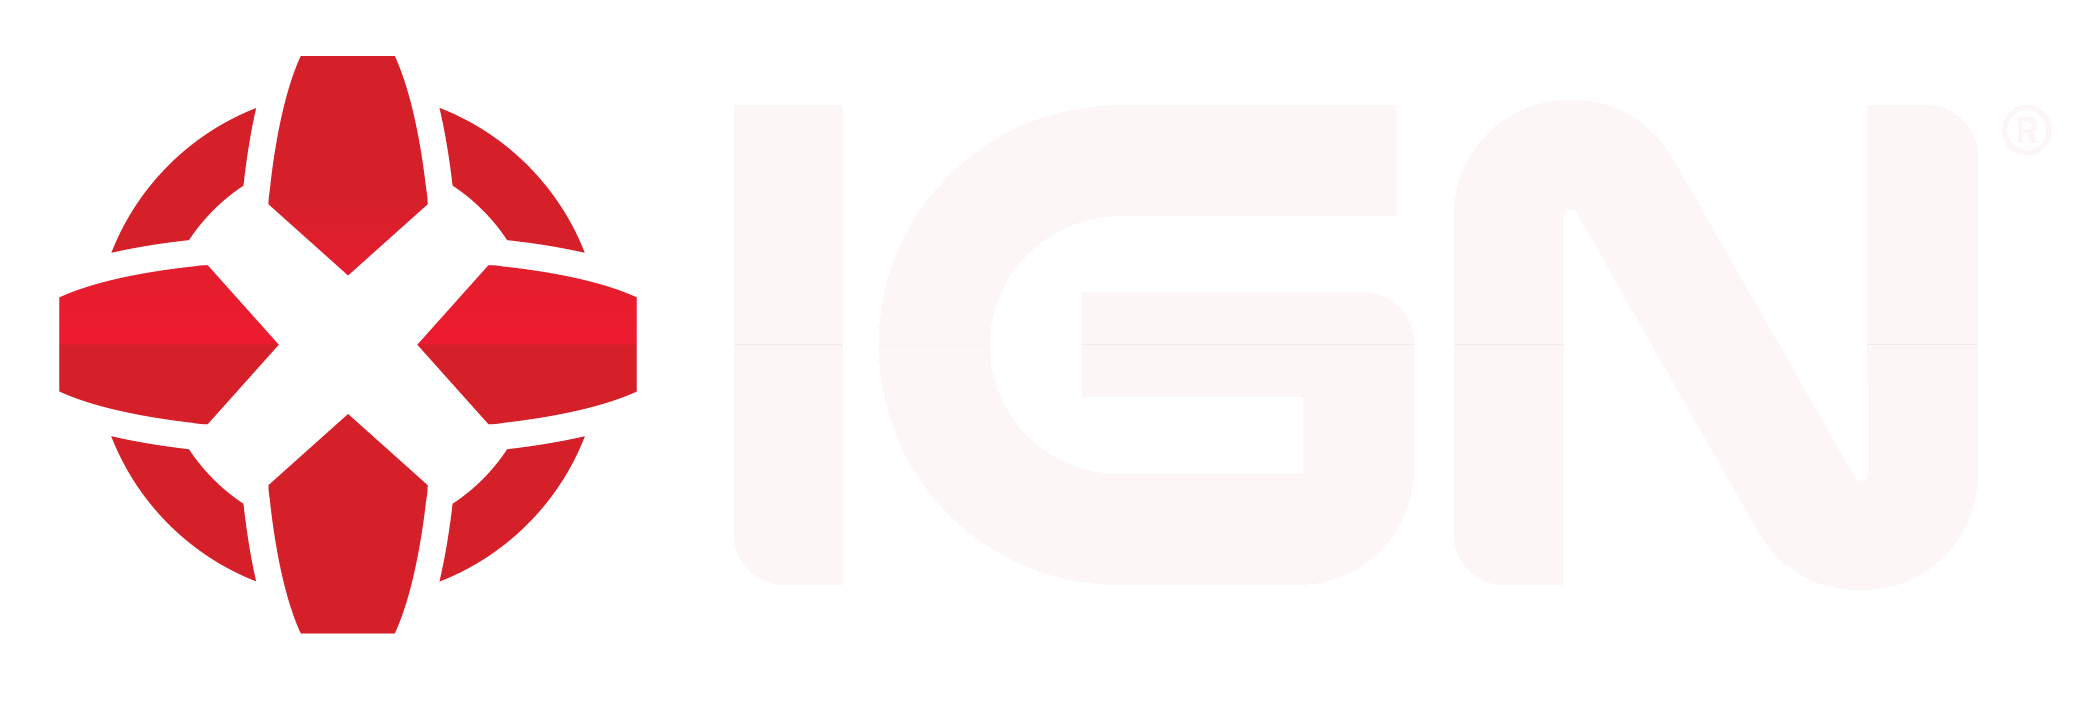 IGN Logo - Ign-logo white - iRacing.com | iRacing.com Motorsport Simulations